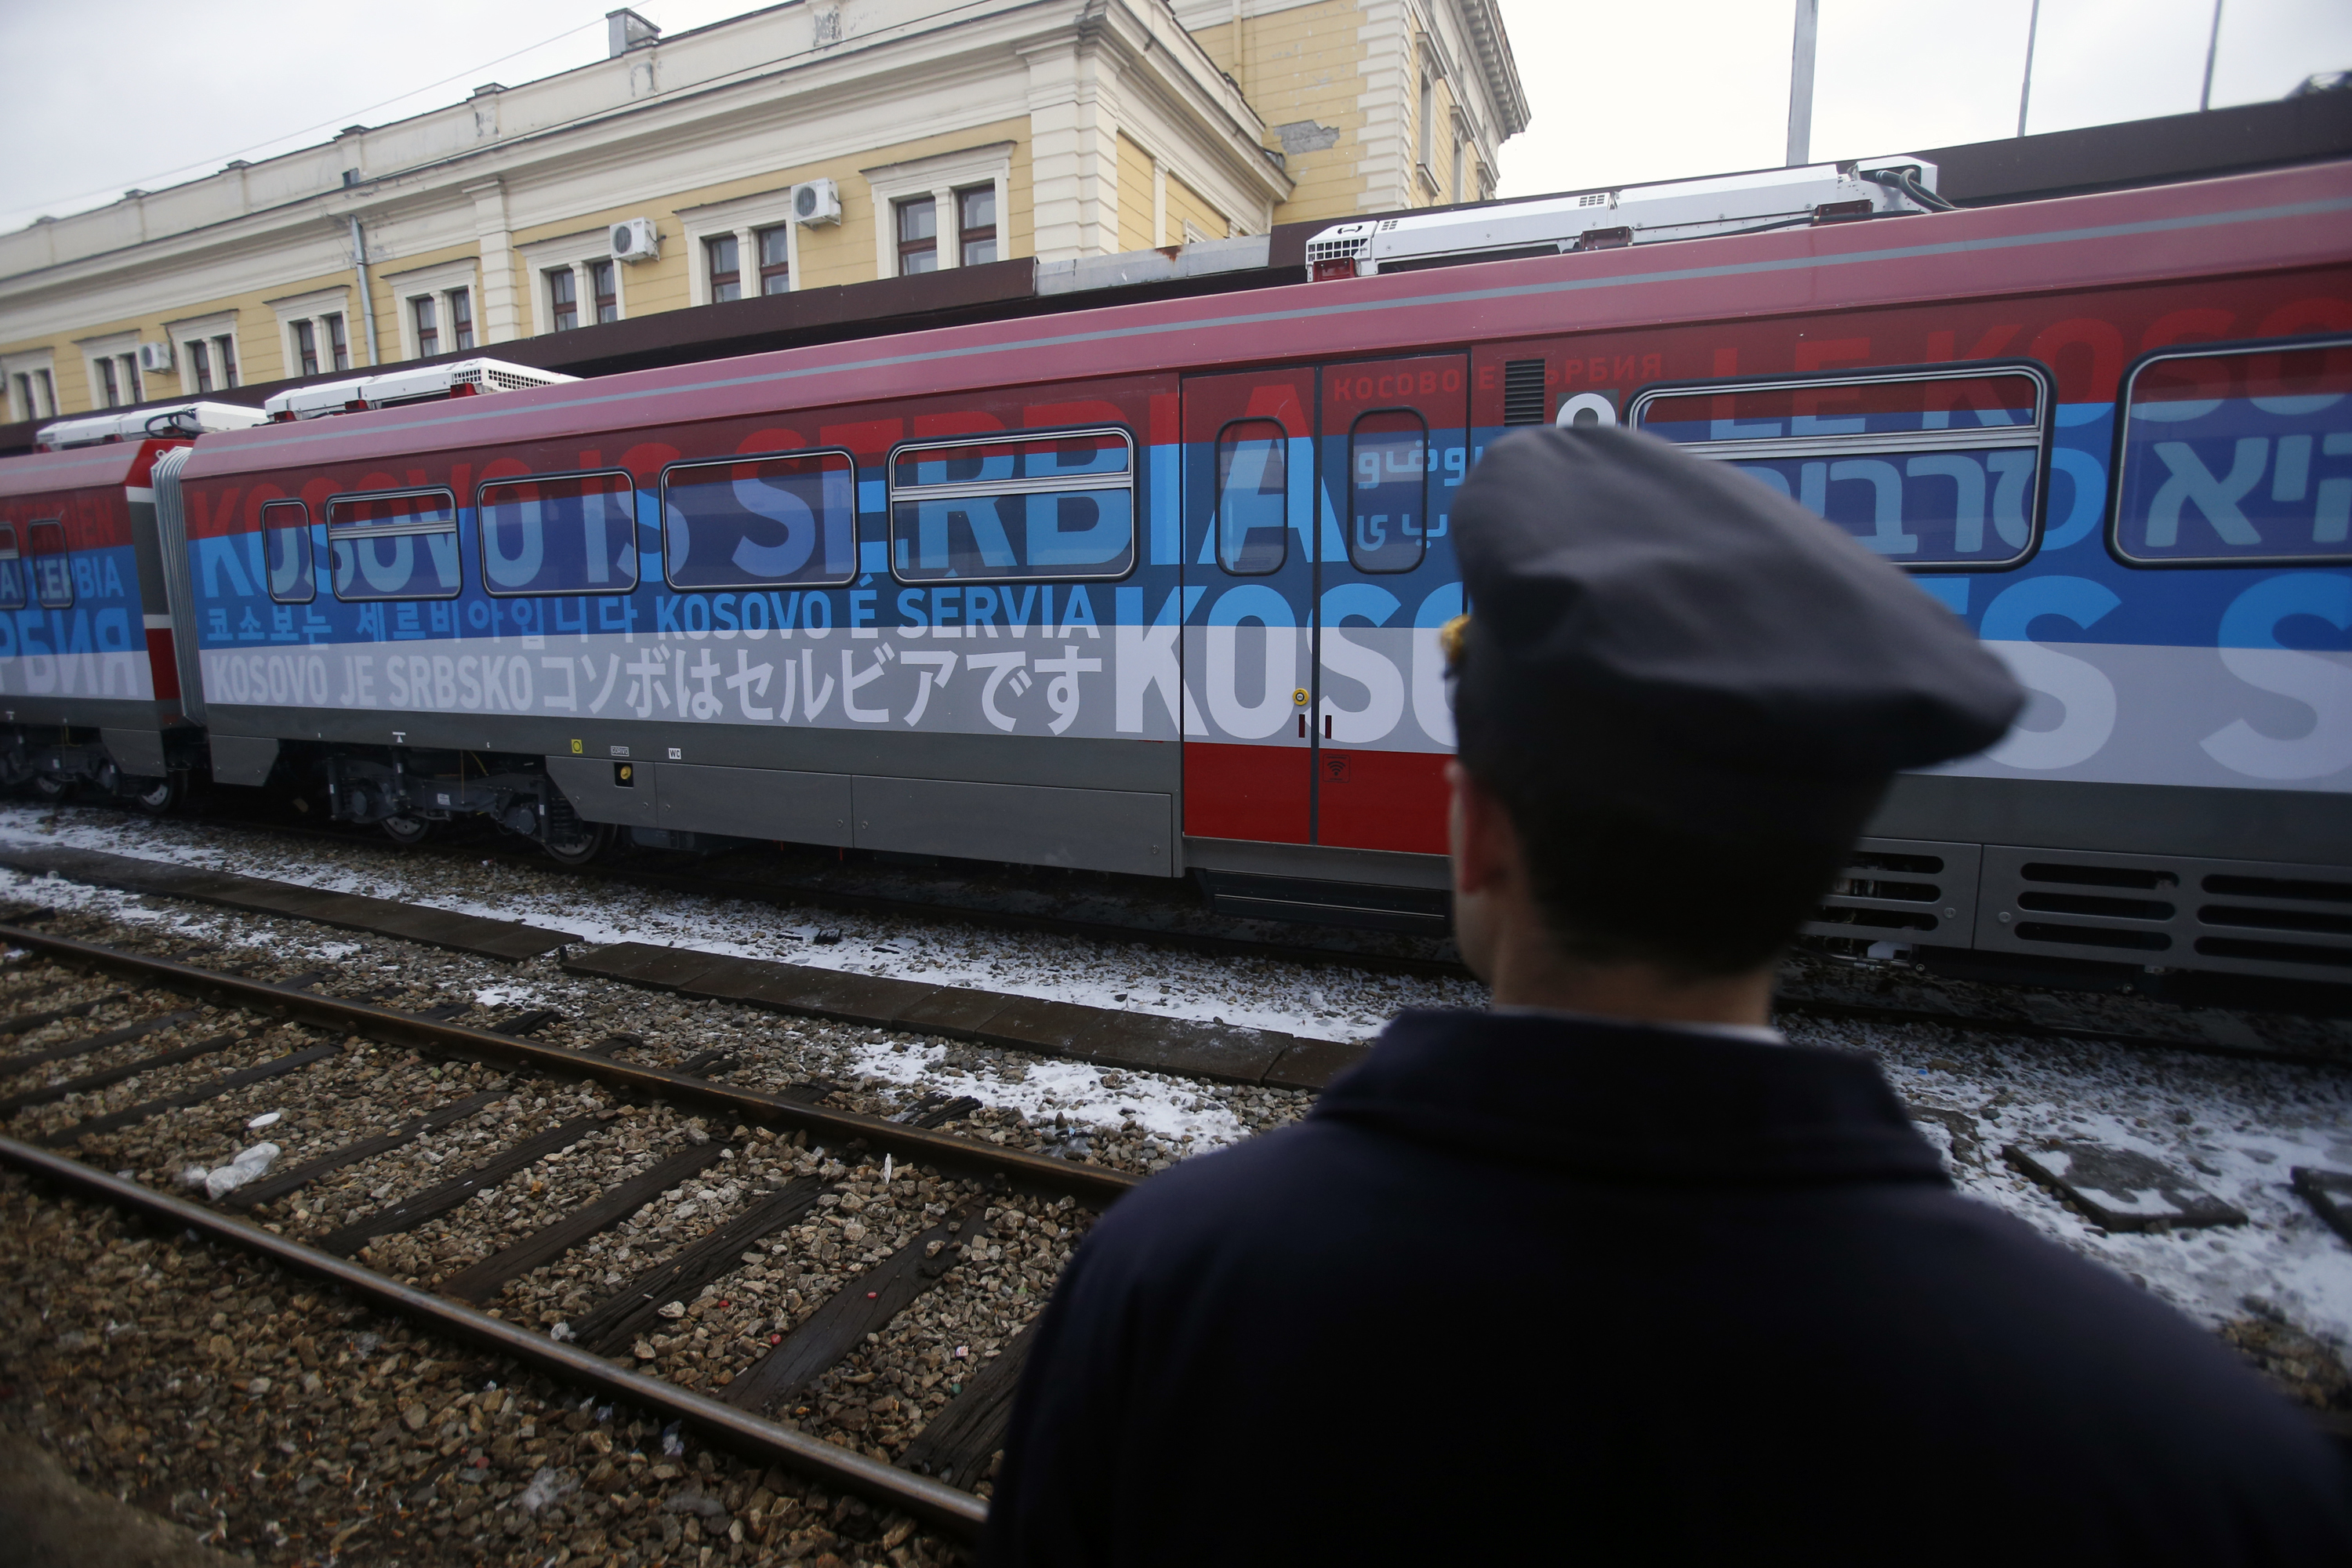 Сръбски националистически влак спрян от Косово